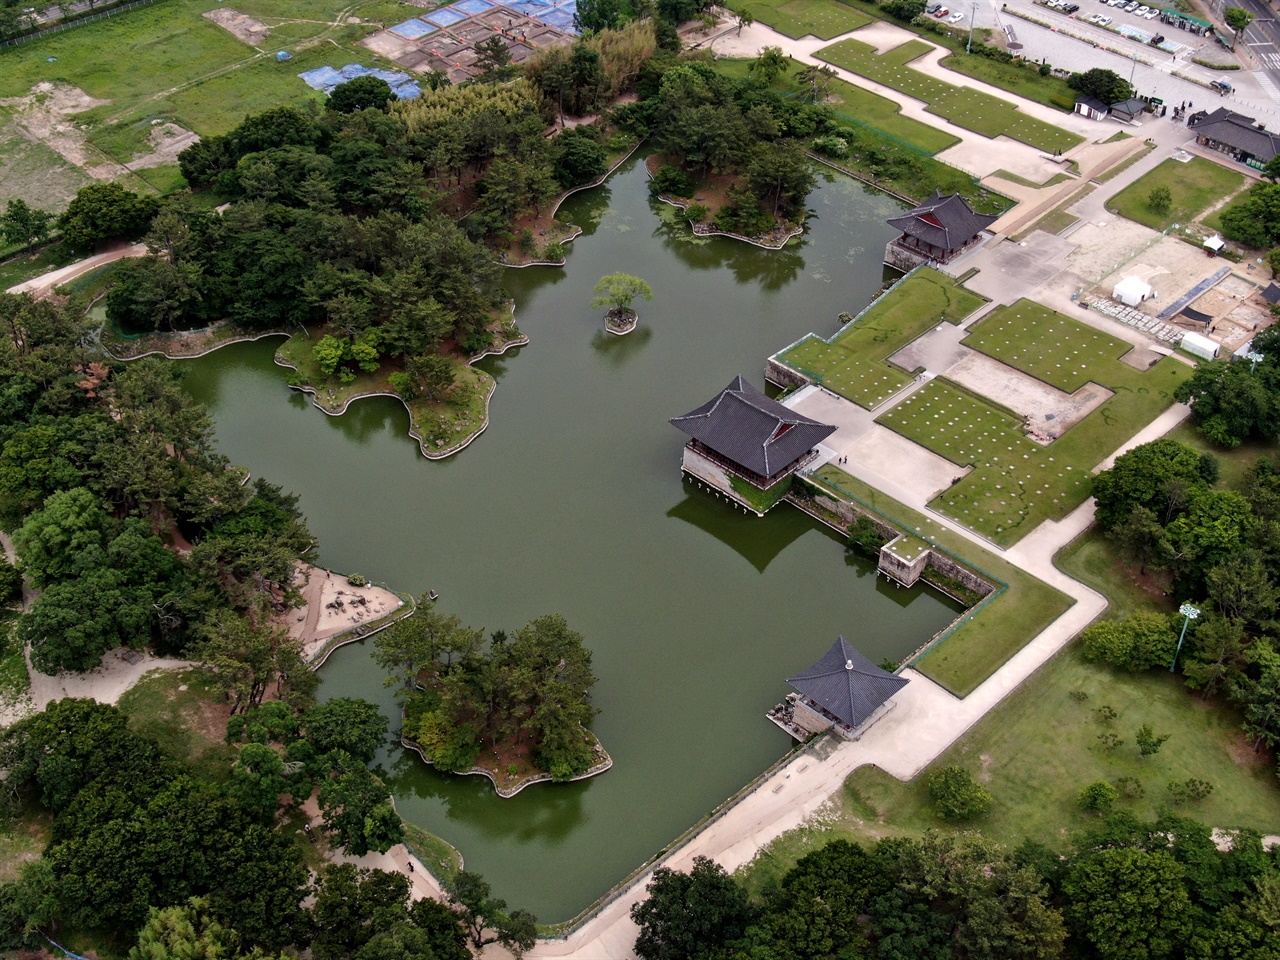 사진 속 연못은 통일신라의 예술적 성취를 보여주는 수많은 유물들이 출토된 월지다.